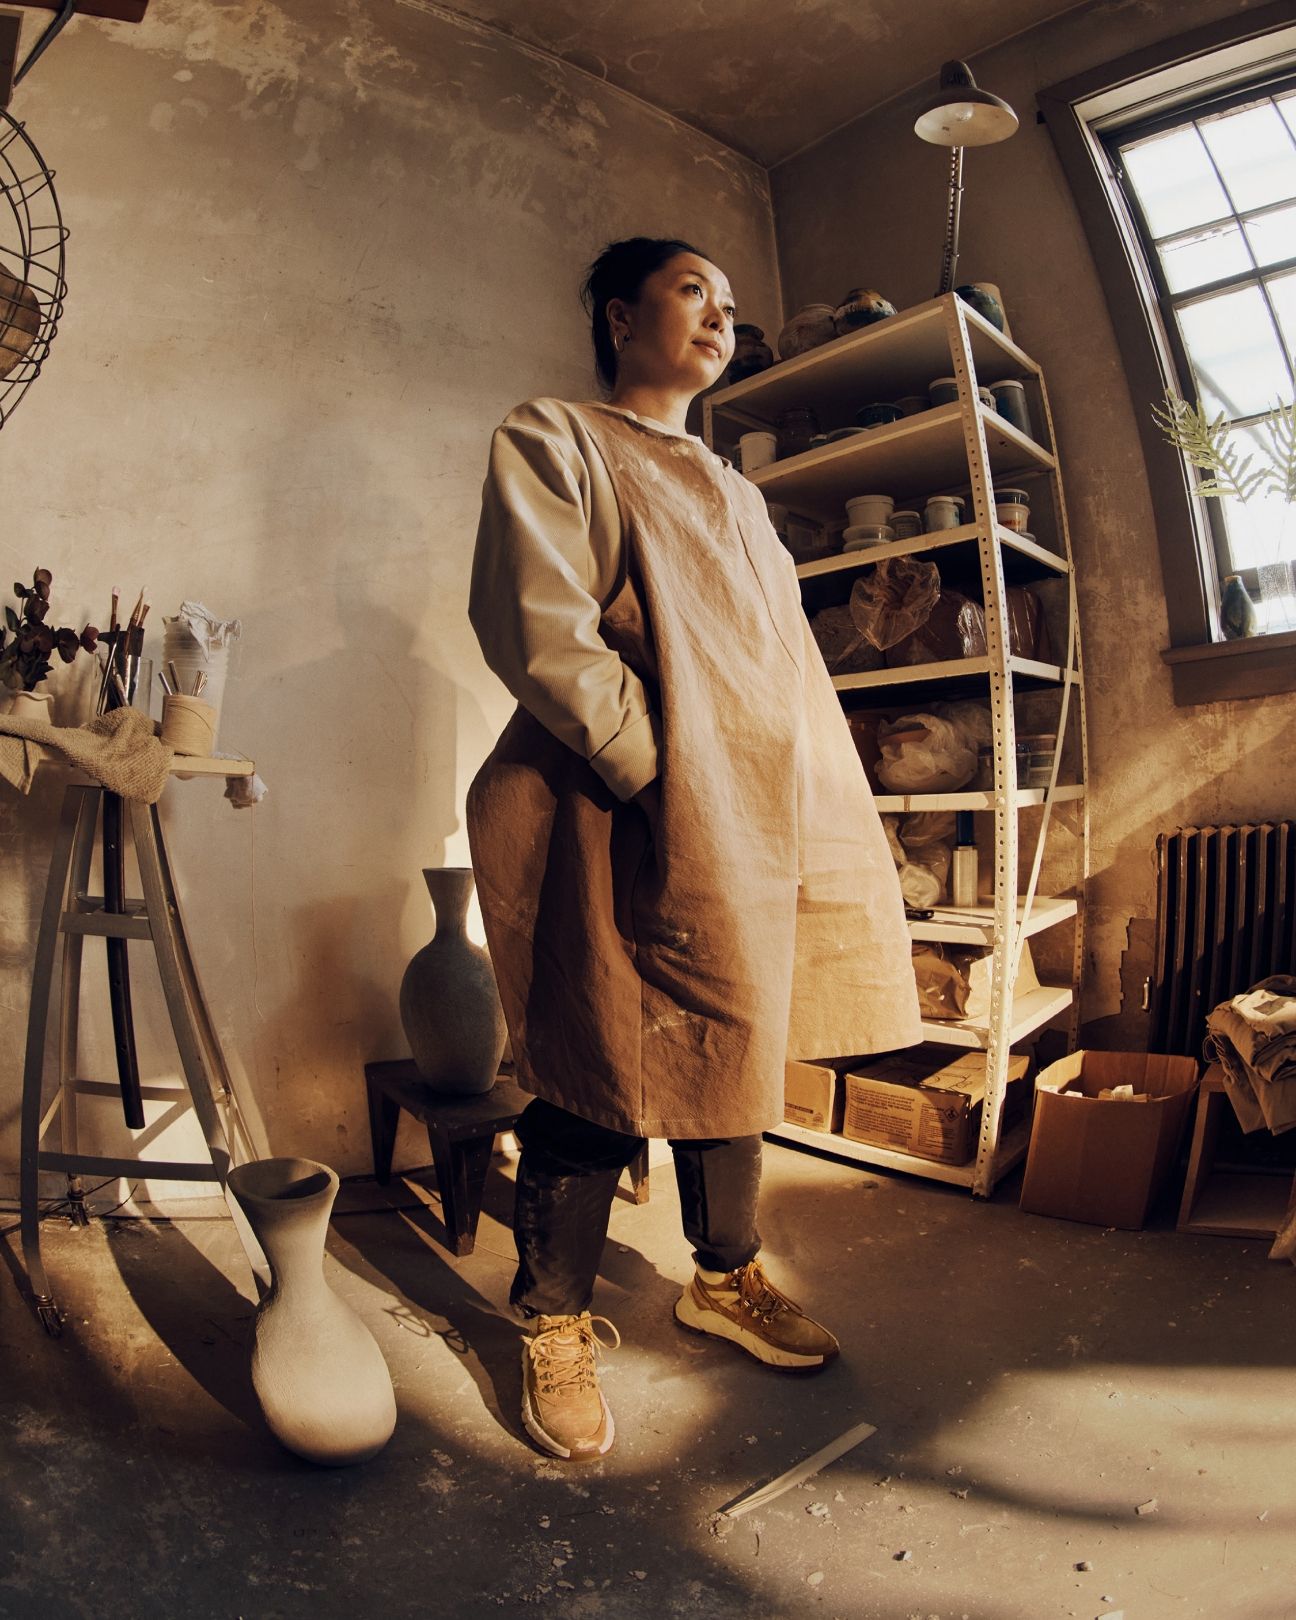 Shino standing in pottery studio.